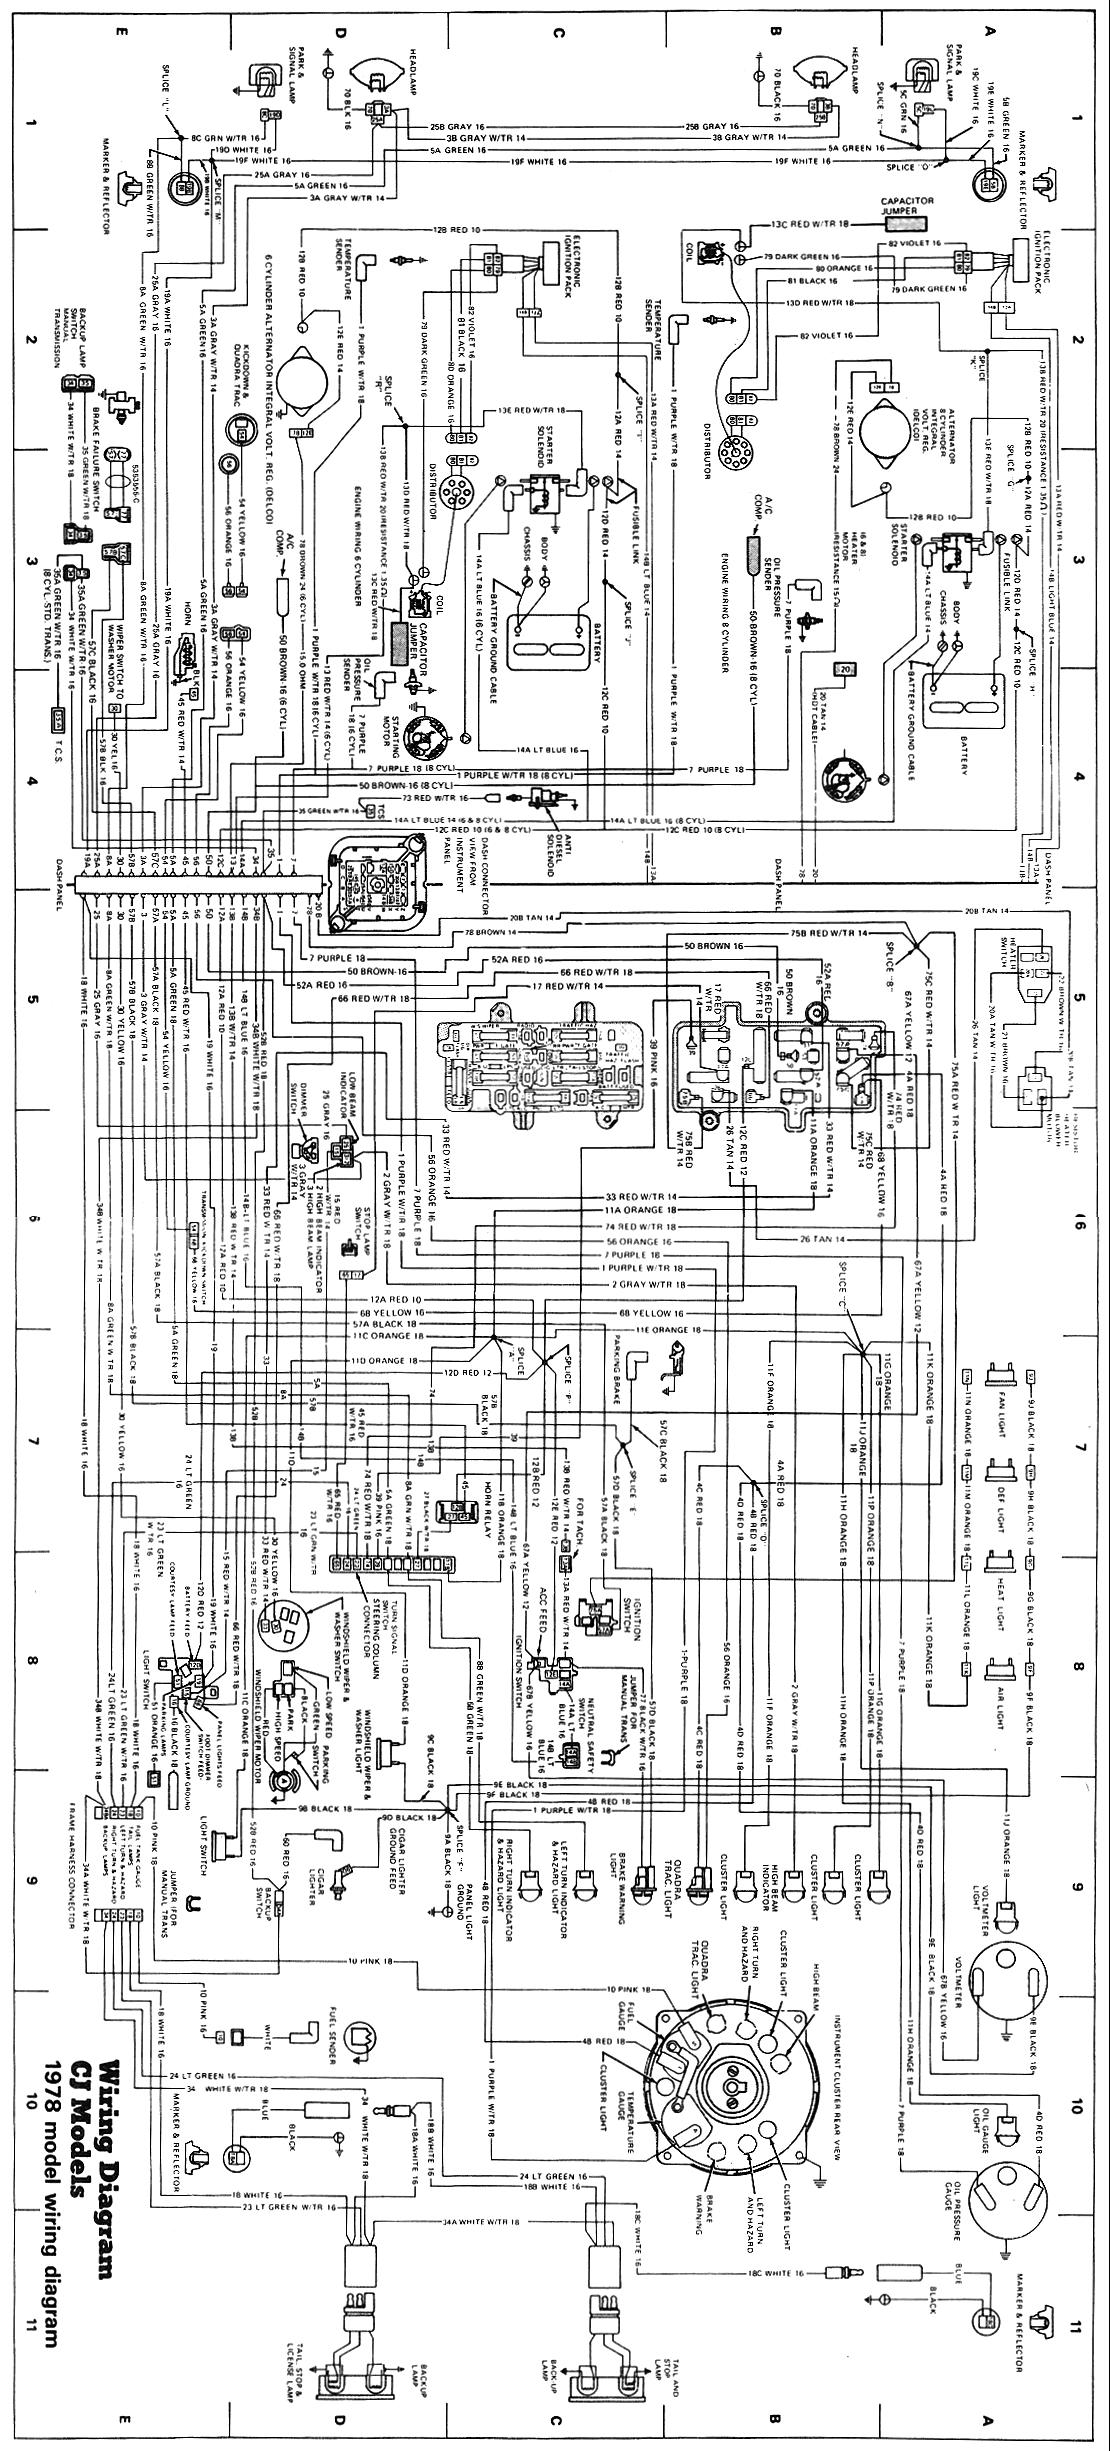 Wiring Schematics | eWillys Jeep Suspension Parts Diagram eWillys